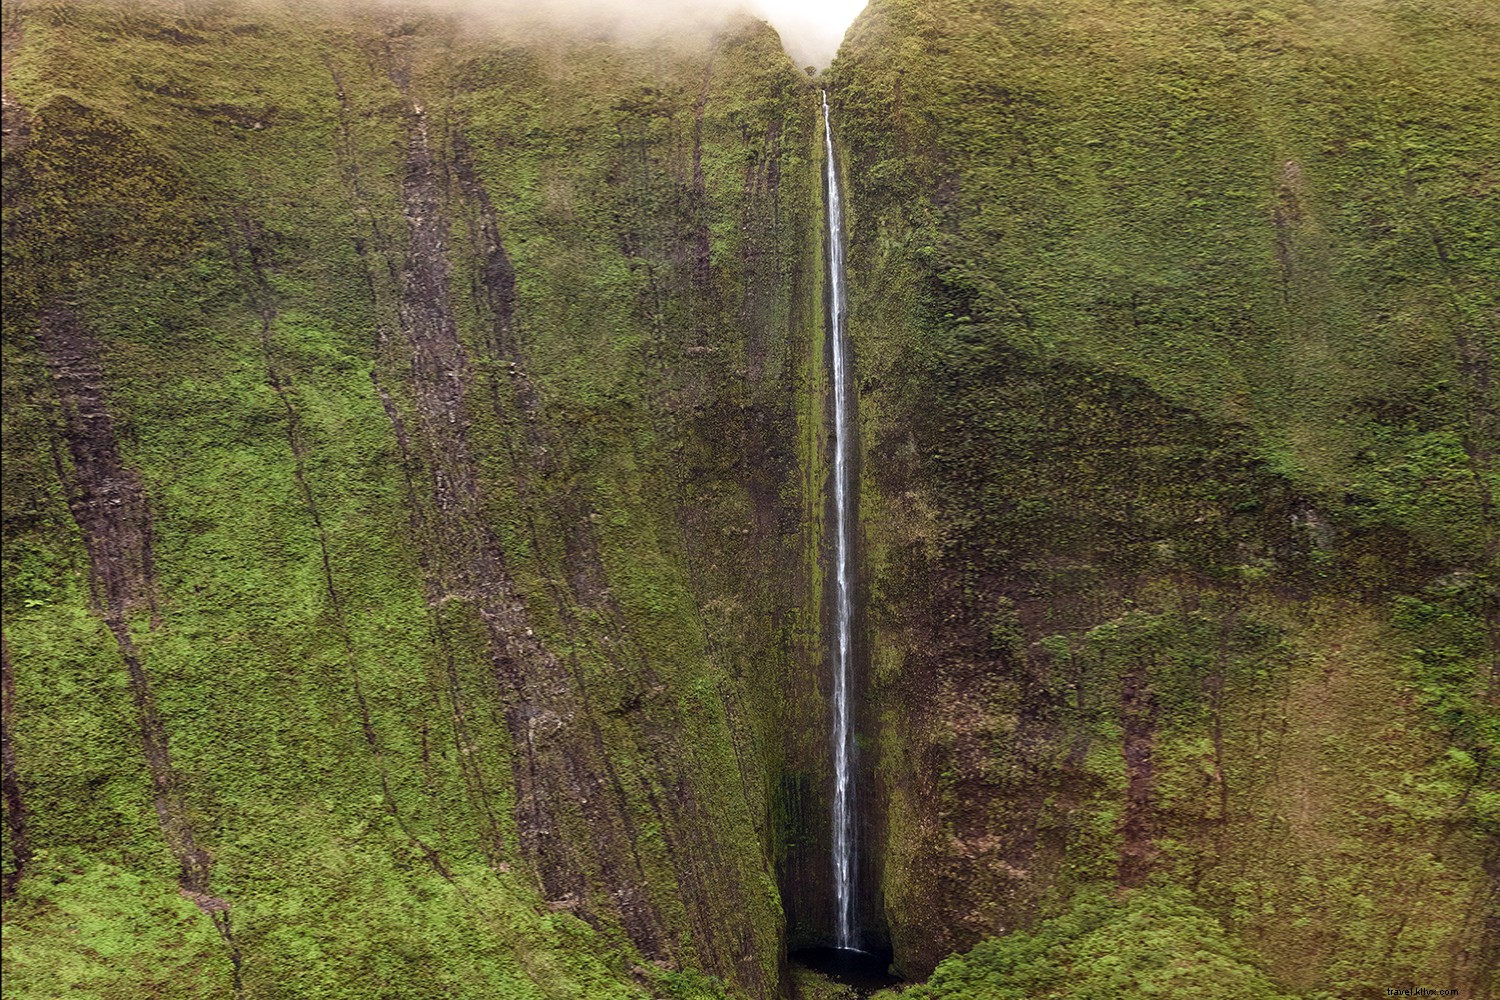 ハワイで最も息をのむような滝の8つ 